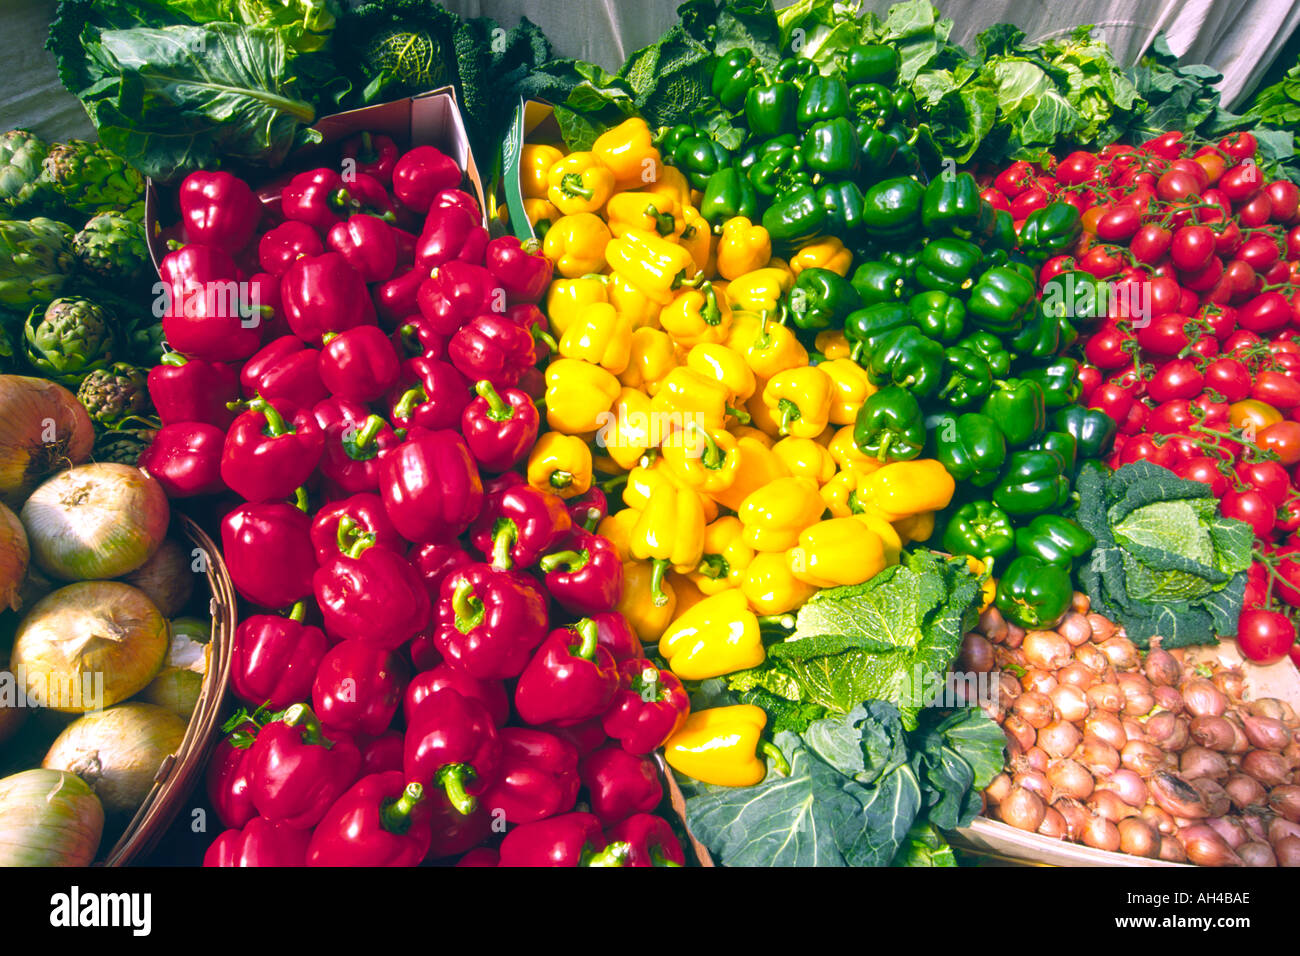 Verschiedene Gemüse wie Zwiebeln, Tomaten, Kohl und rote, grüne und gelbe Paprika am Marktstand. Stockfoto